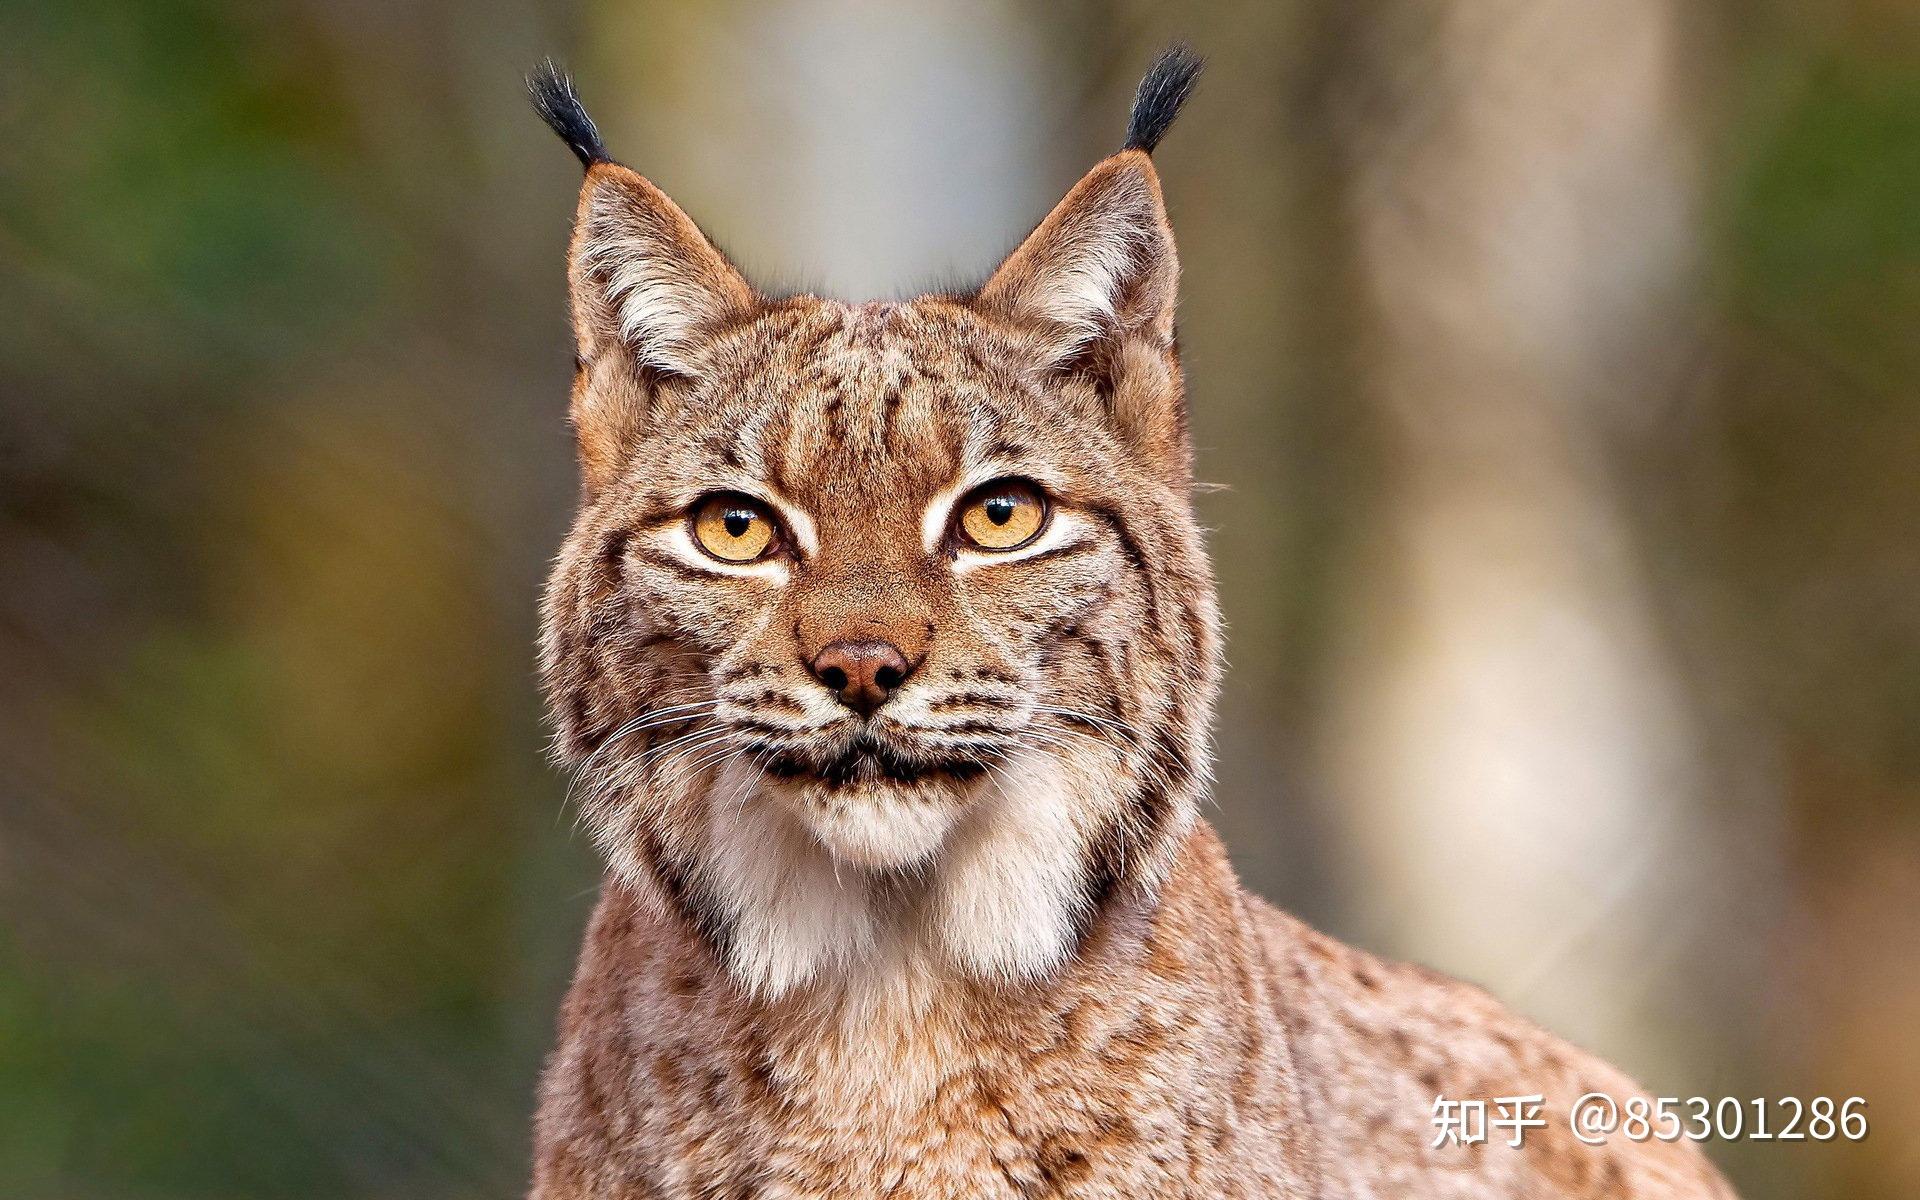 为什么豹子老虎大型食肉类动物耳朵是圆的而猫的耳朵是尖的